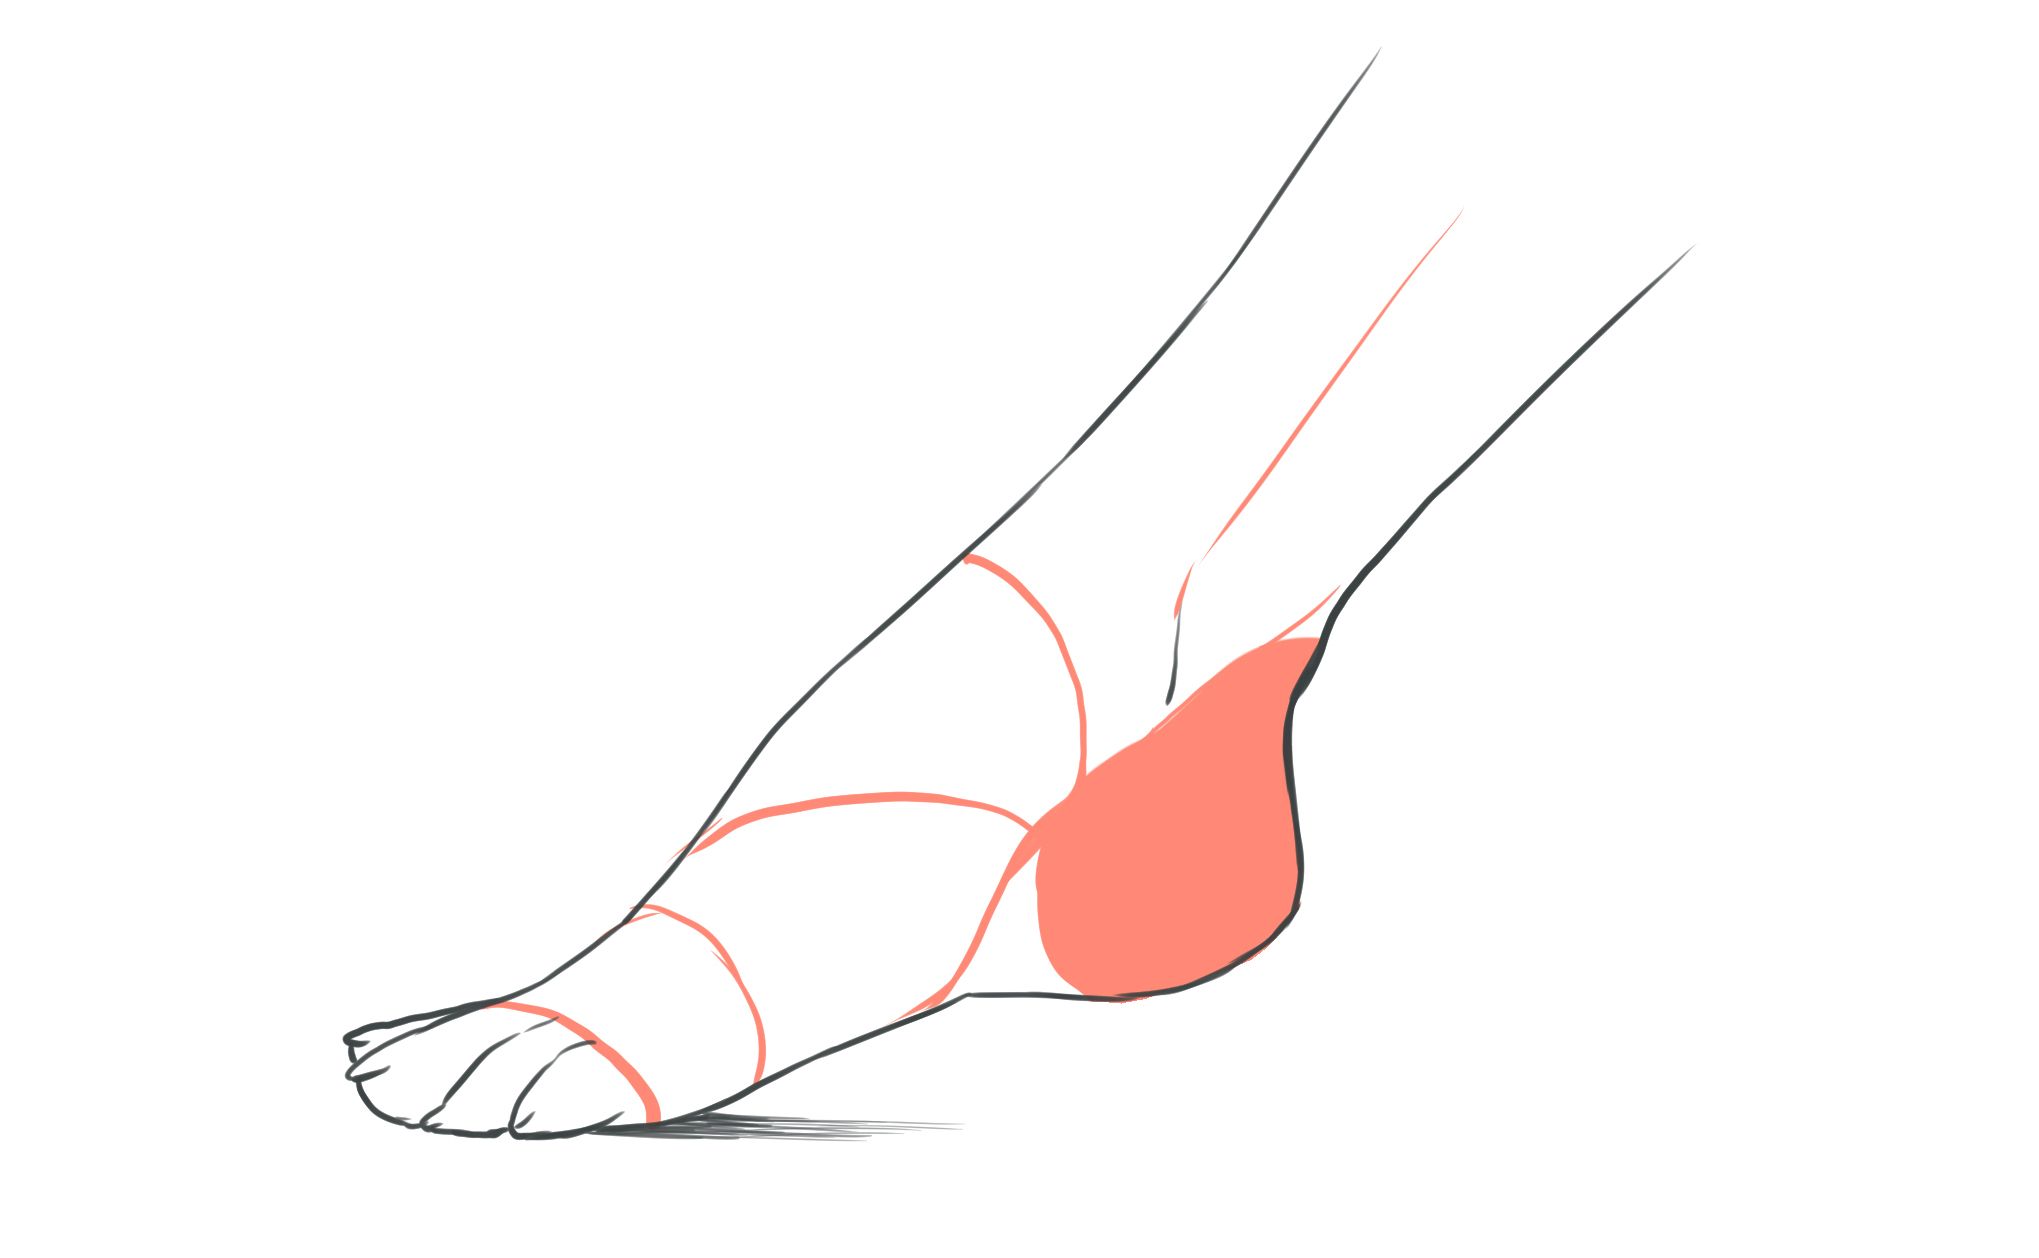 パーツ分けで描ける 足の描き方講座 イラスト マンガ描き方ナビ